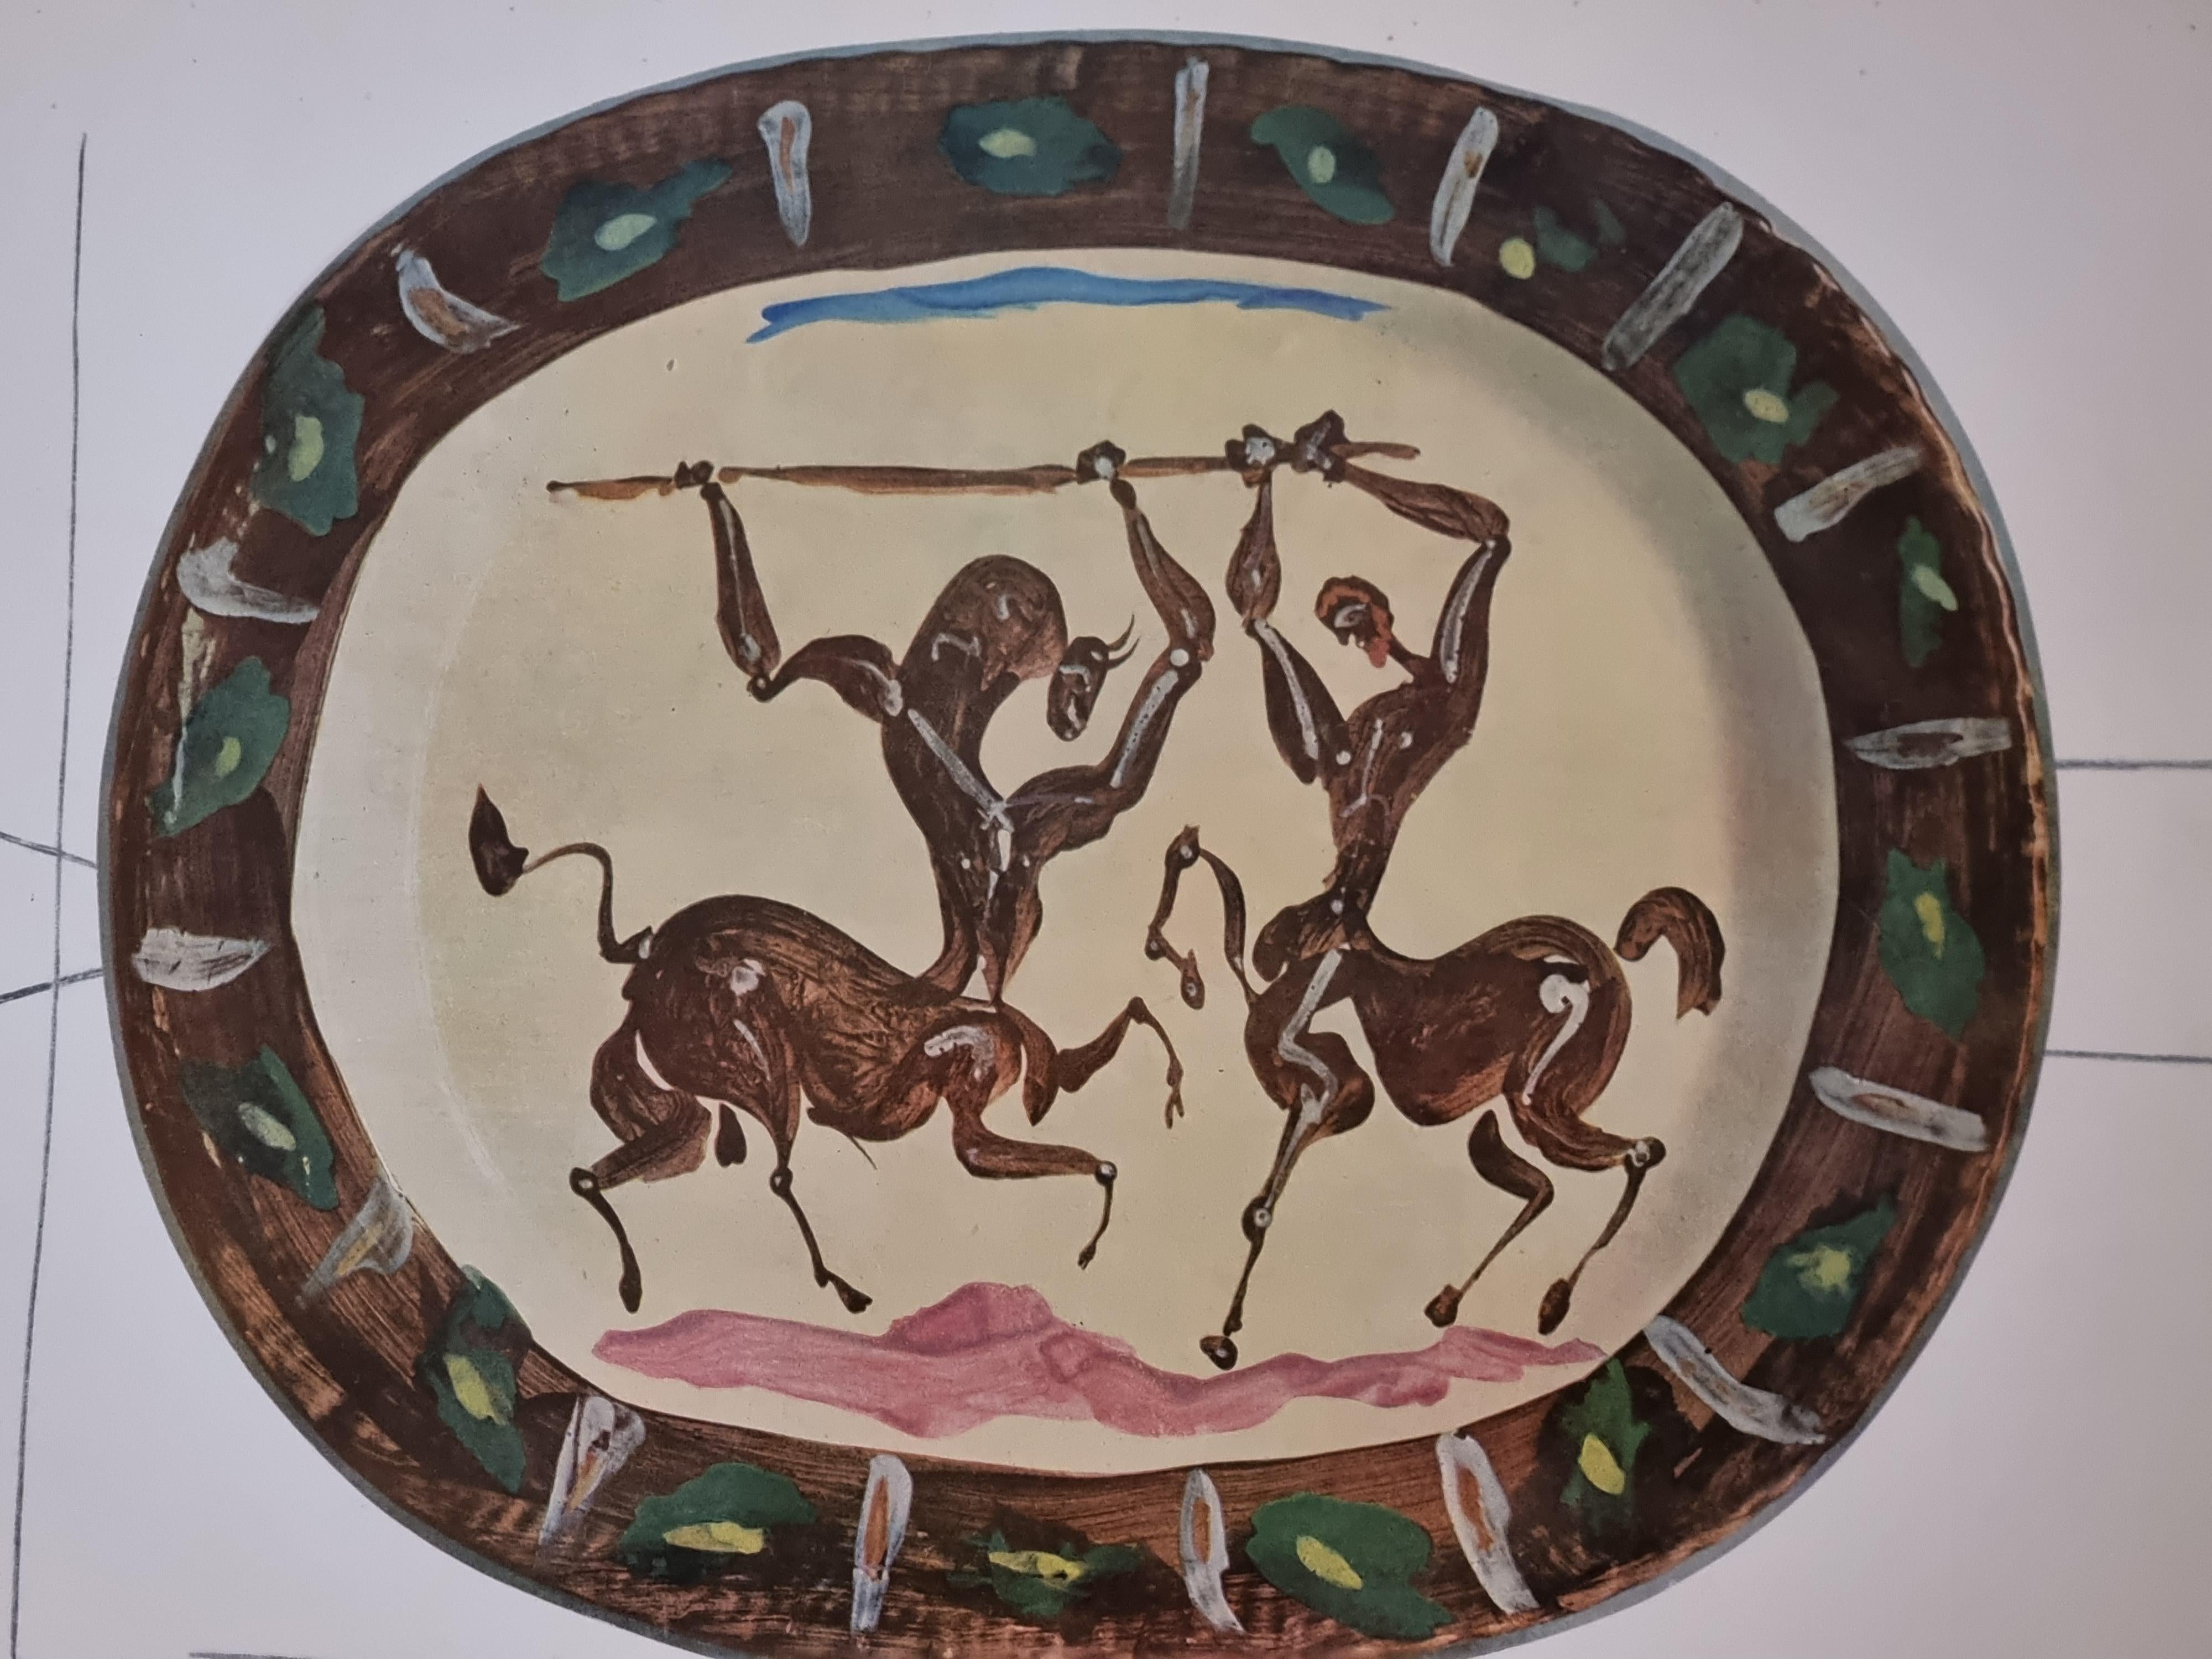 Albert Skira Print of battle of Centaurs, Ceramic Plate, 